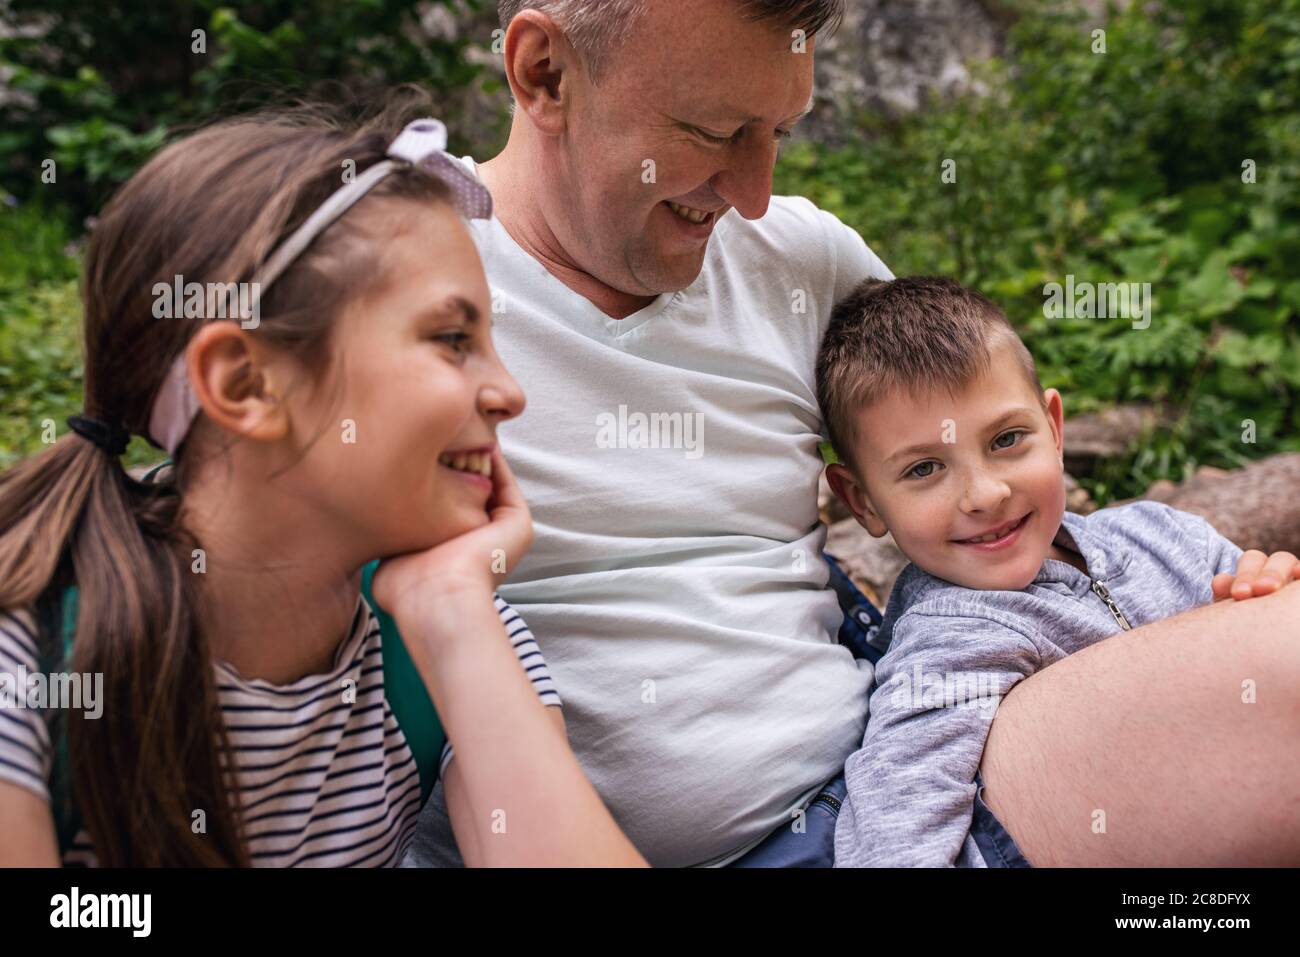 Un père souriant et ses deux enfants adorables assis sur un sentier faisant une pause dans leur randonnée en famille Banque D'Images